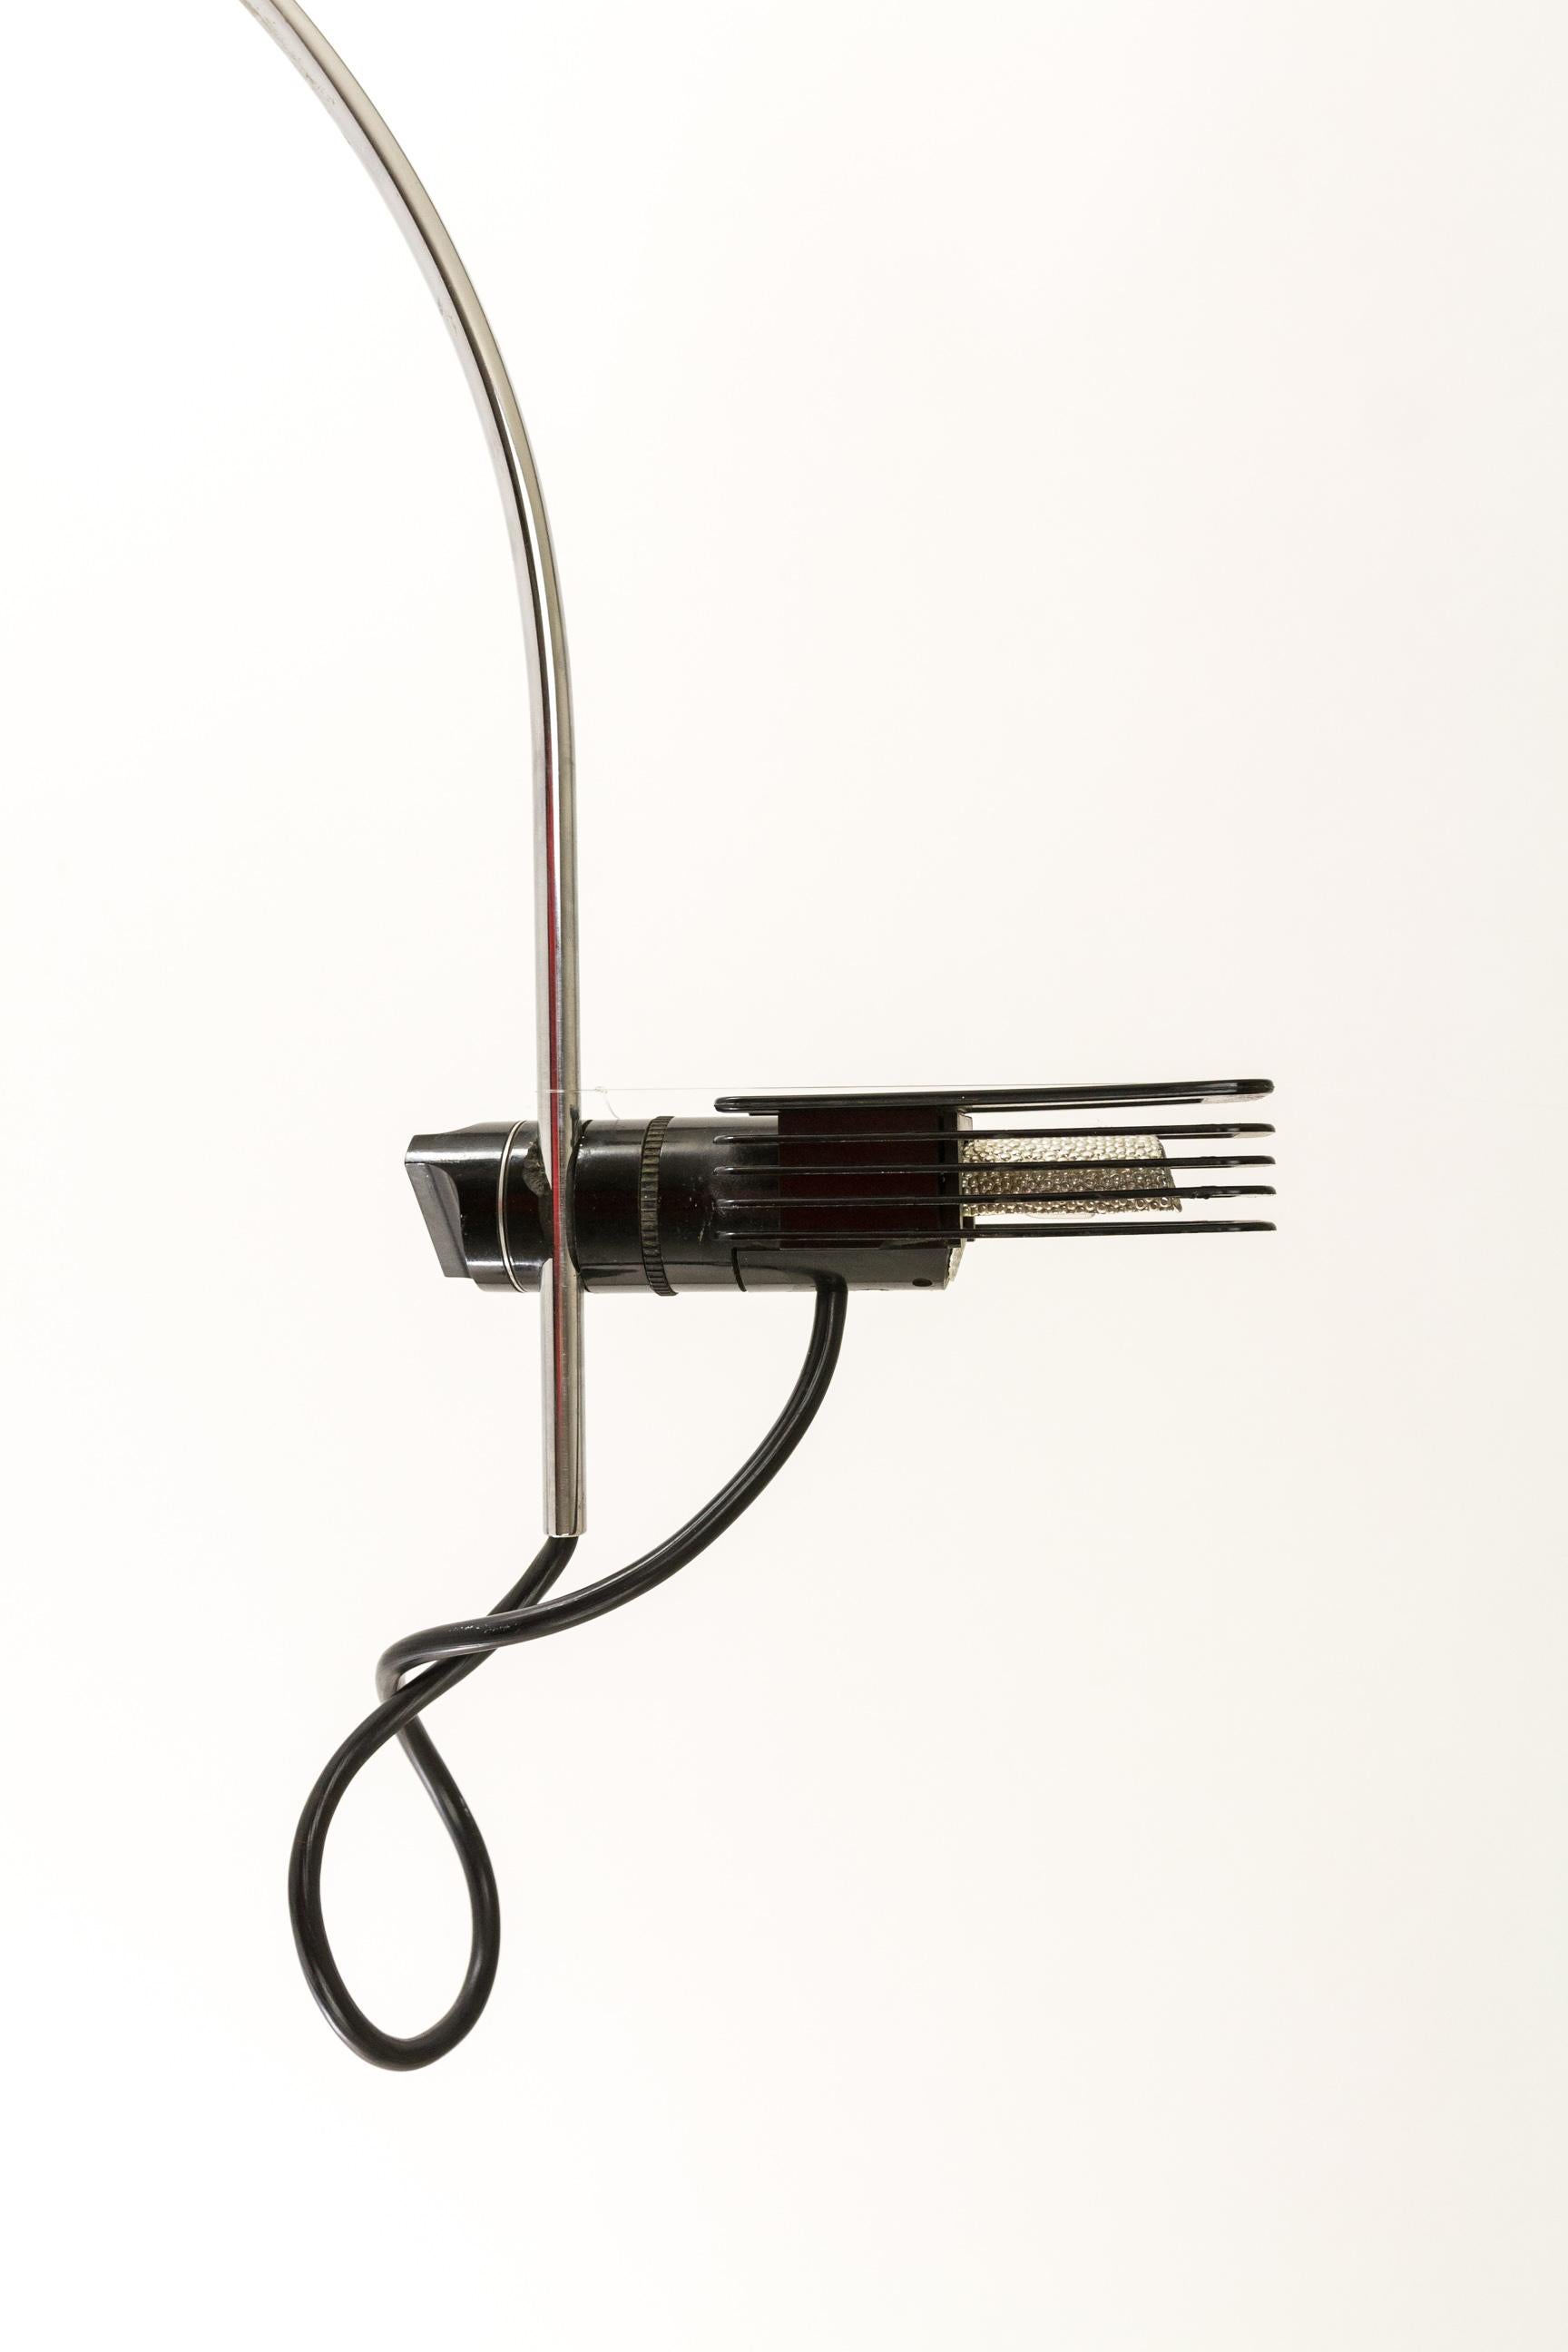 Bruno Gecchelin entwarf diesen Halogen-Wandlampenflügel 1973 für den italienischen Leuchtenhersteller O-Luce.

Der Schirm ist in einem ausgezeichneten Zustand, vor allem wenn man sein Alter und die potentielle Hitze, die die Halogenlampe erzeugen